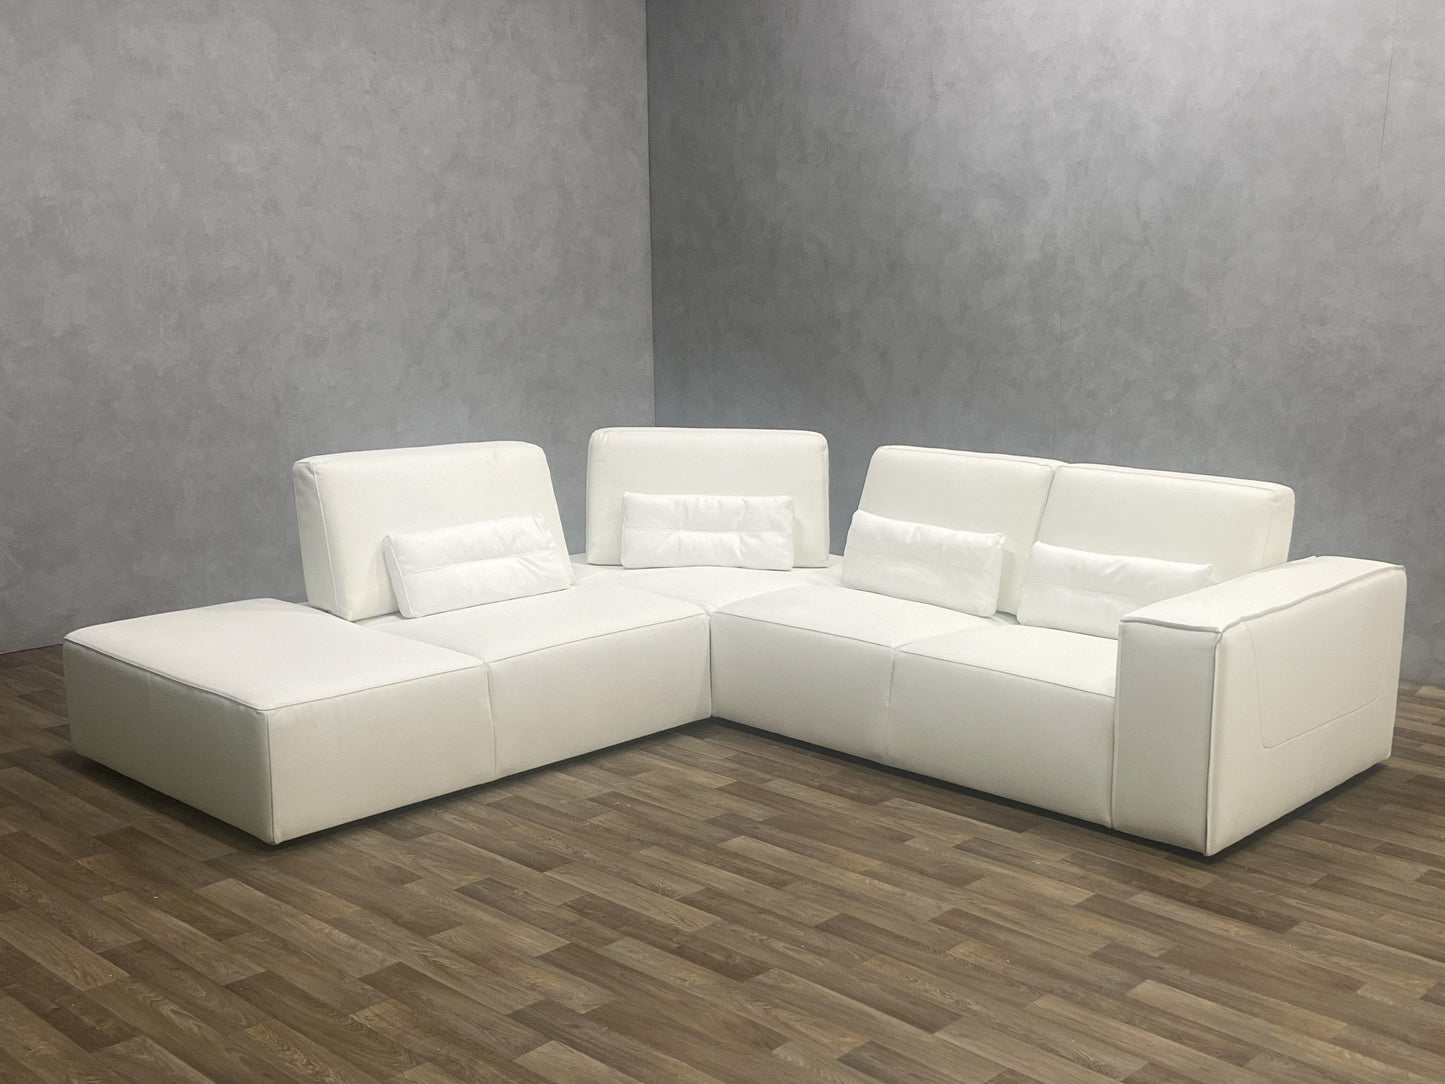 Lamod Italia Hollywood - Italian White Leather LAF Chaise Sectional Sofa